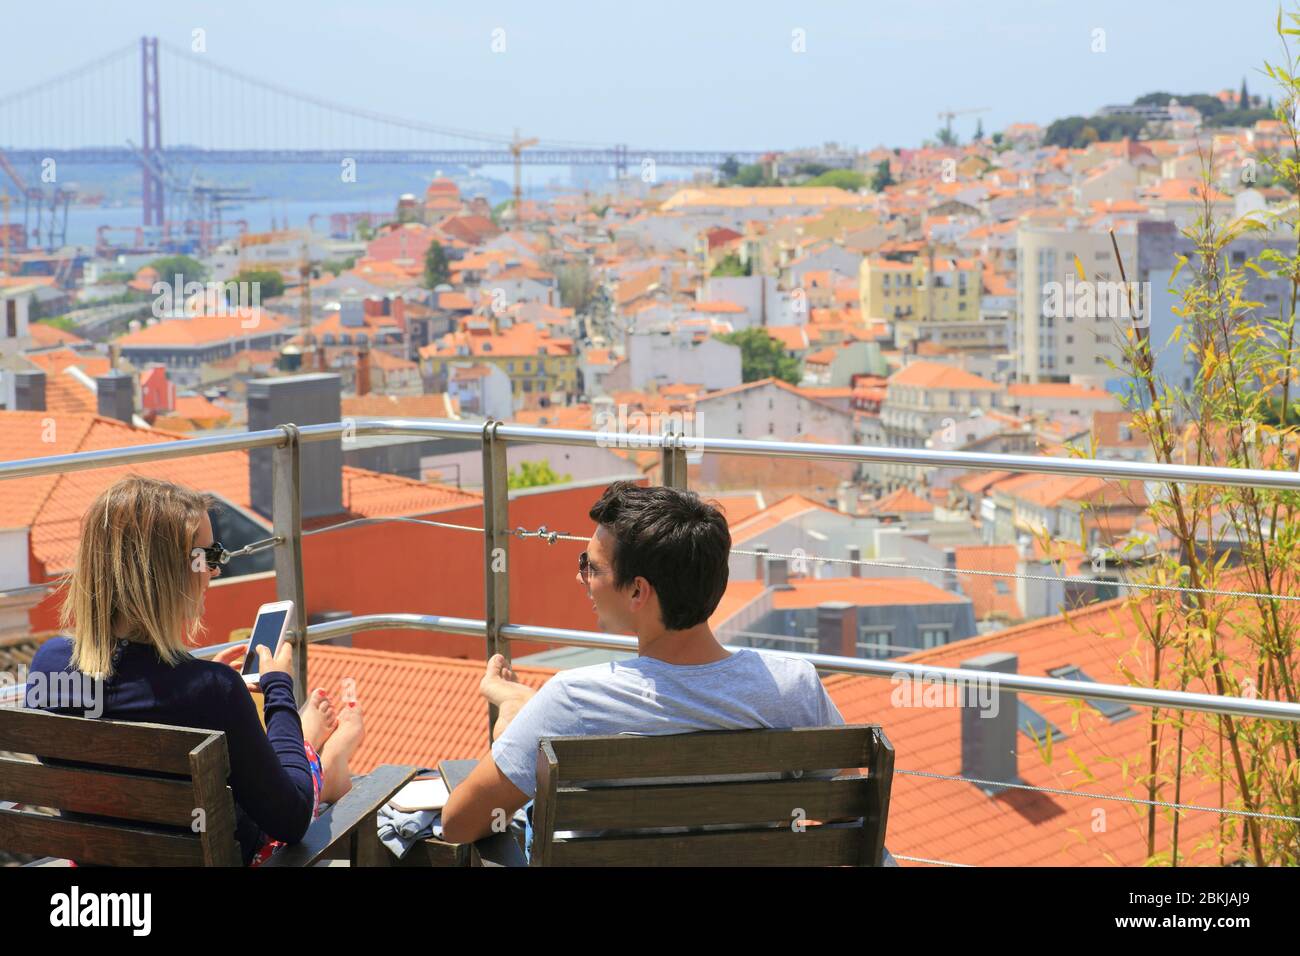 Portugal, Lisbonne, Bairro Alto, Park bar restaurant installé sur le toit d'un parking, sur le toit avec vue sur le quartier de Lapa, le Tage et le pont 25 avril Banque D'Images